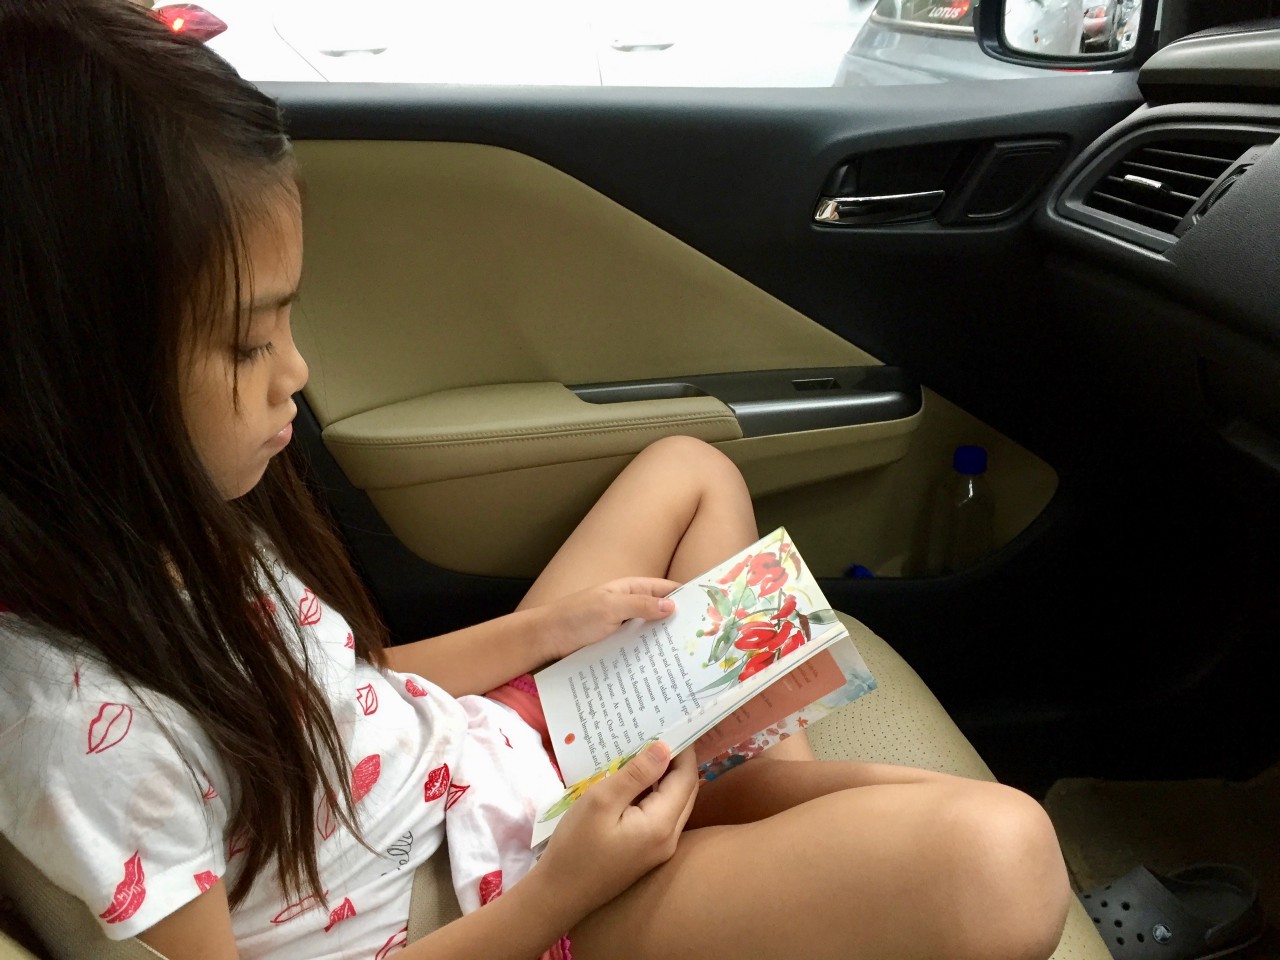 Laaija reads in the car)